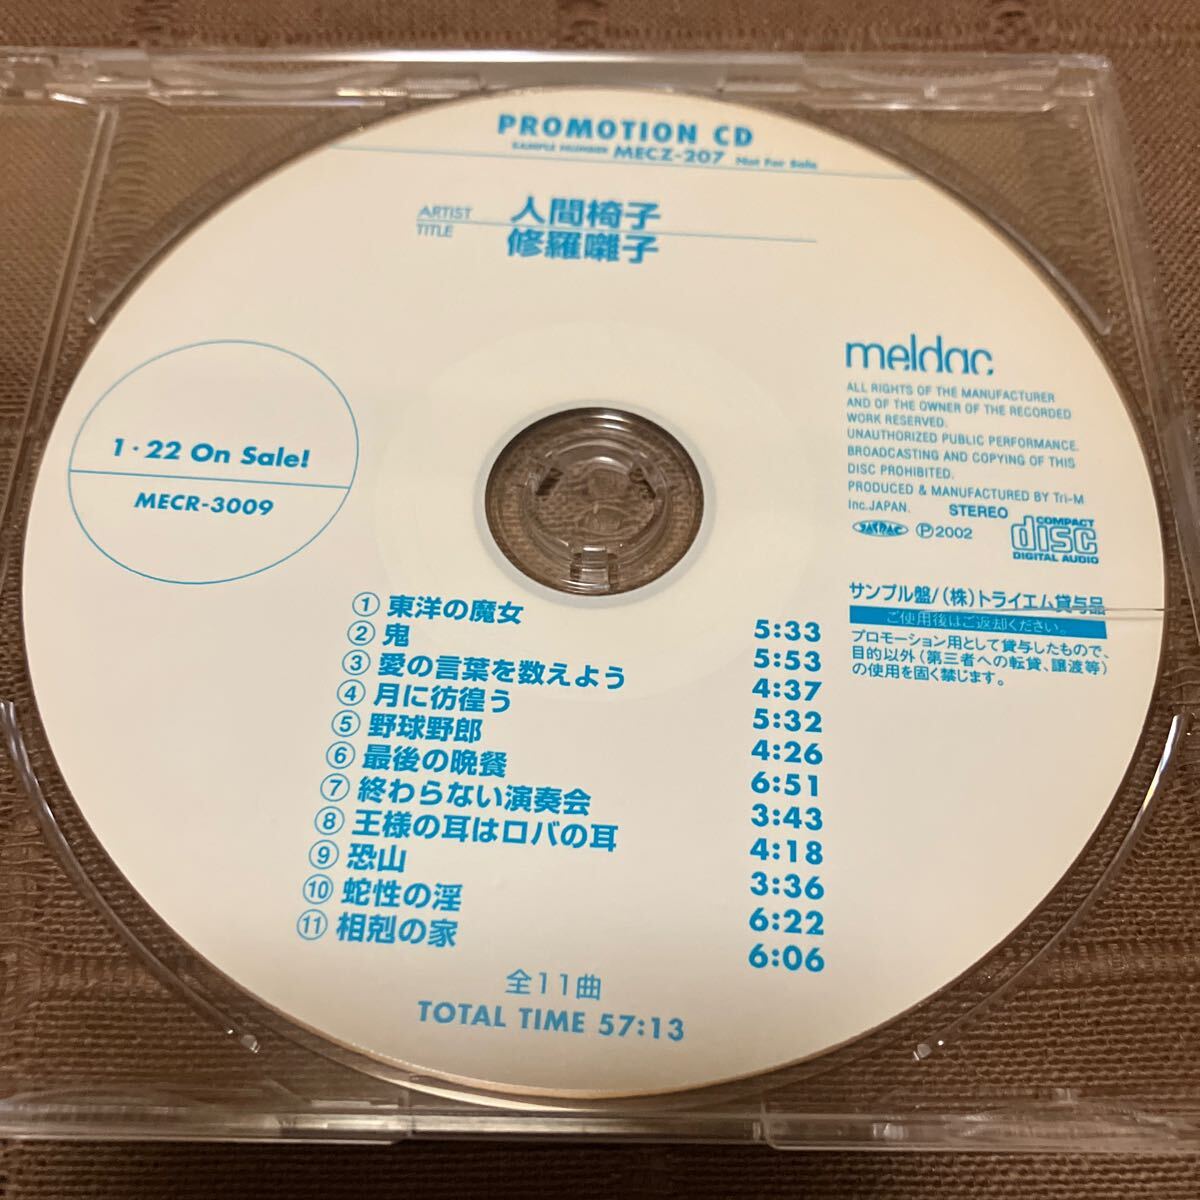 鬼レア 非売品 音楽CD 人間椅子 / 修羅囃子 11曲収録 プロモ盤 MECZ-207_画像2